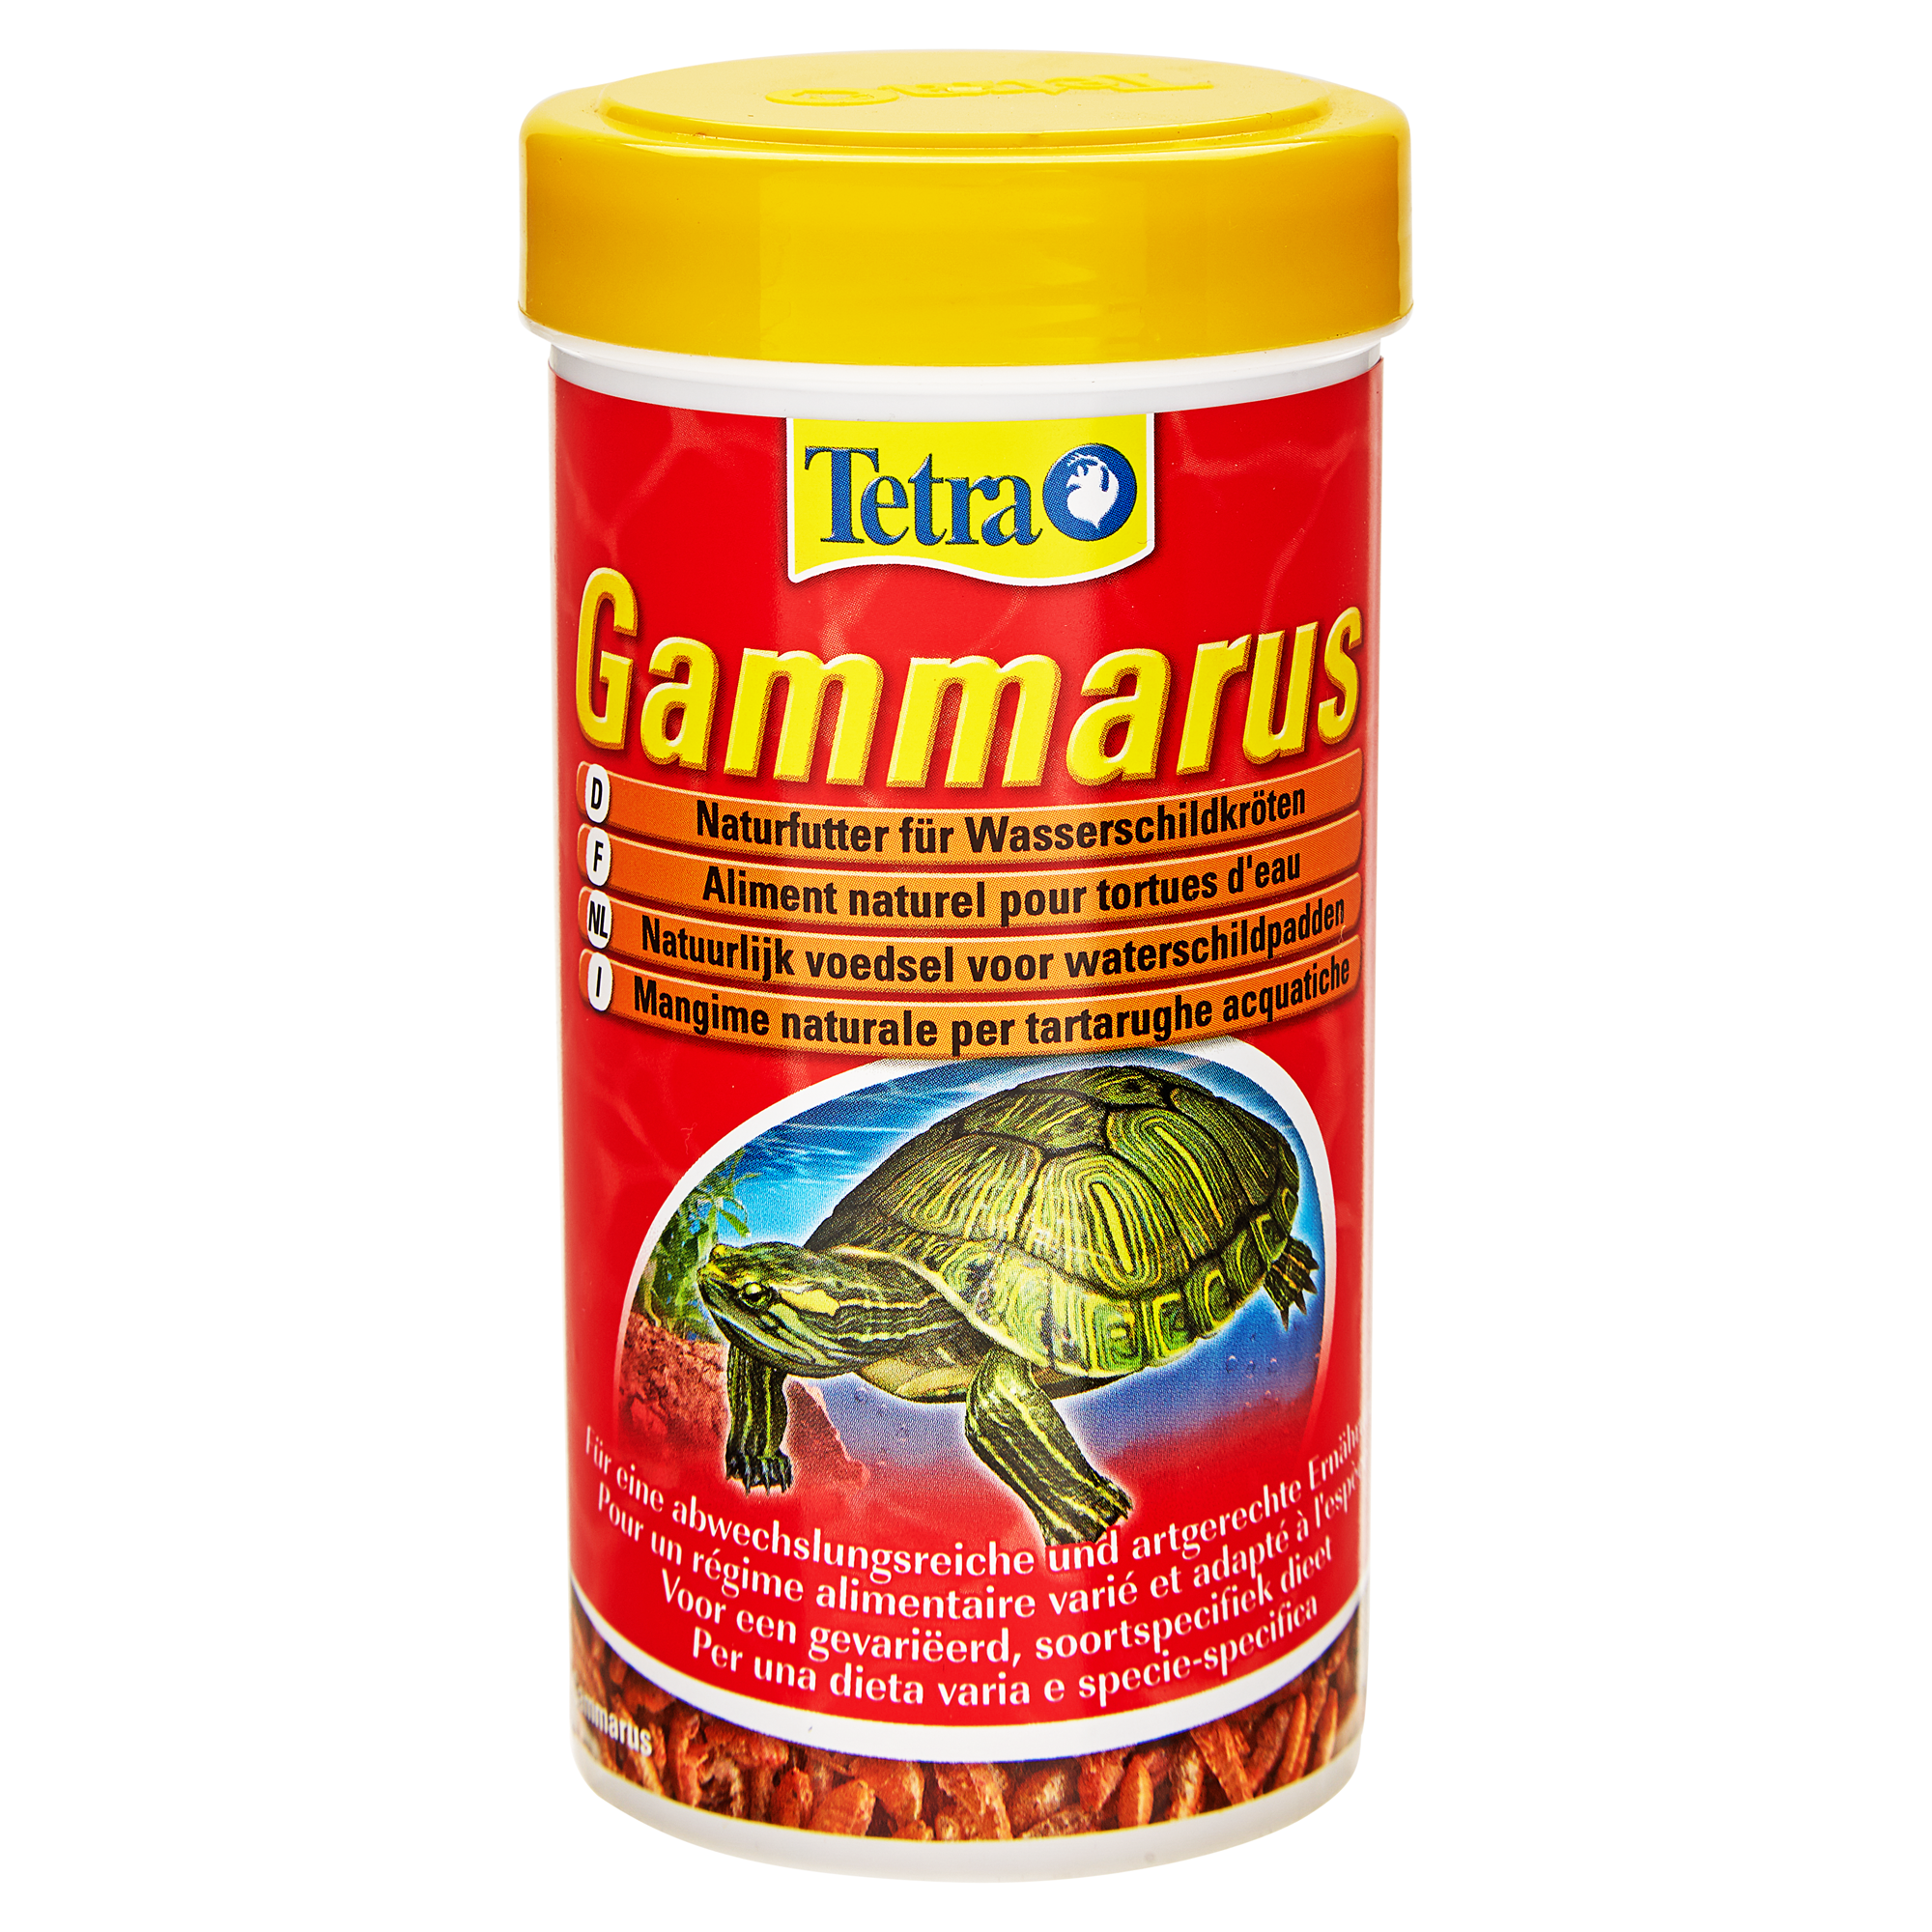 Schildkrötenfutter "Gammarus" 25 g + product picture